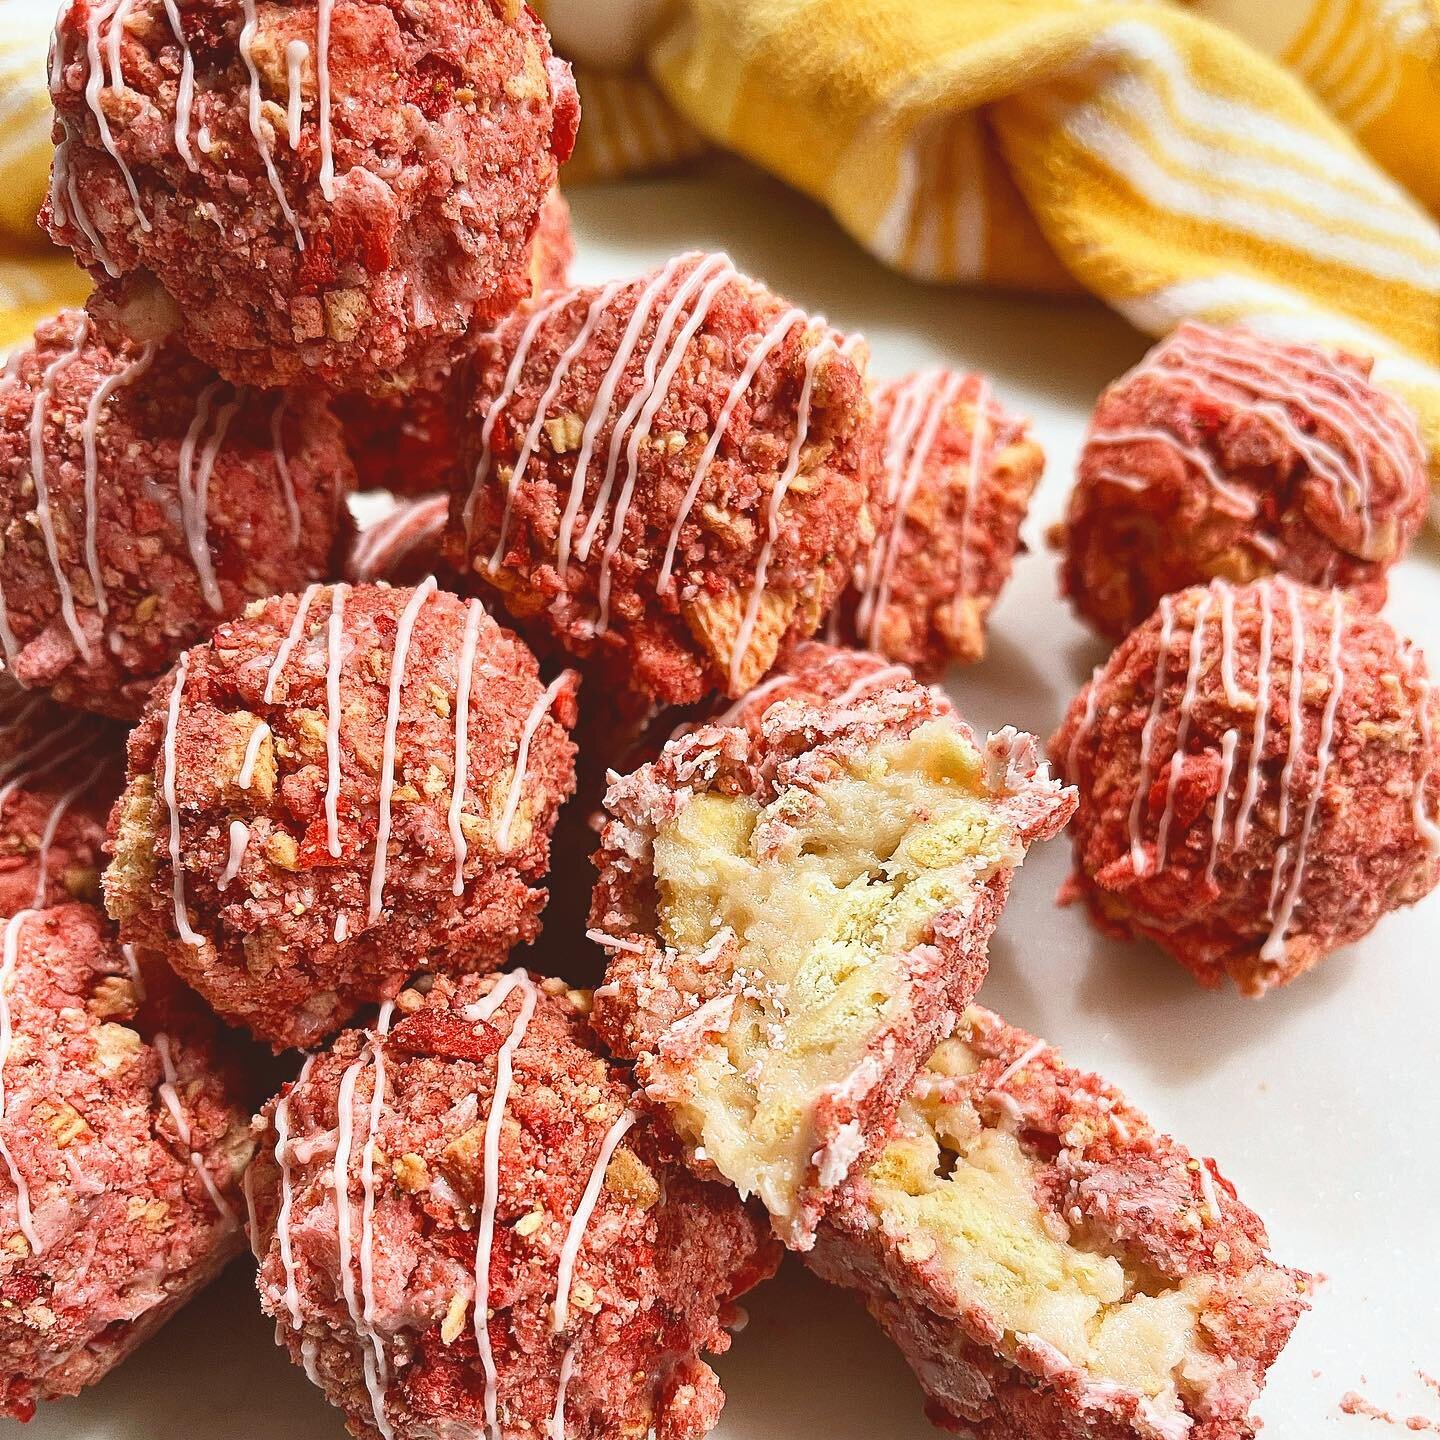 Strawberry crunch Oreo truffles for @kimberlymarielashes THIS SATURDAY!! 🍓🍓🍓